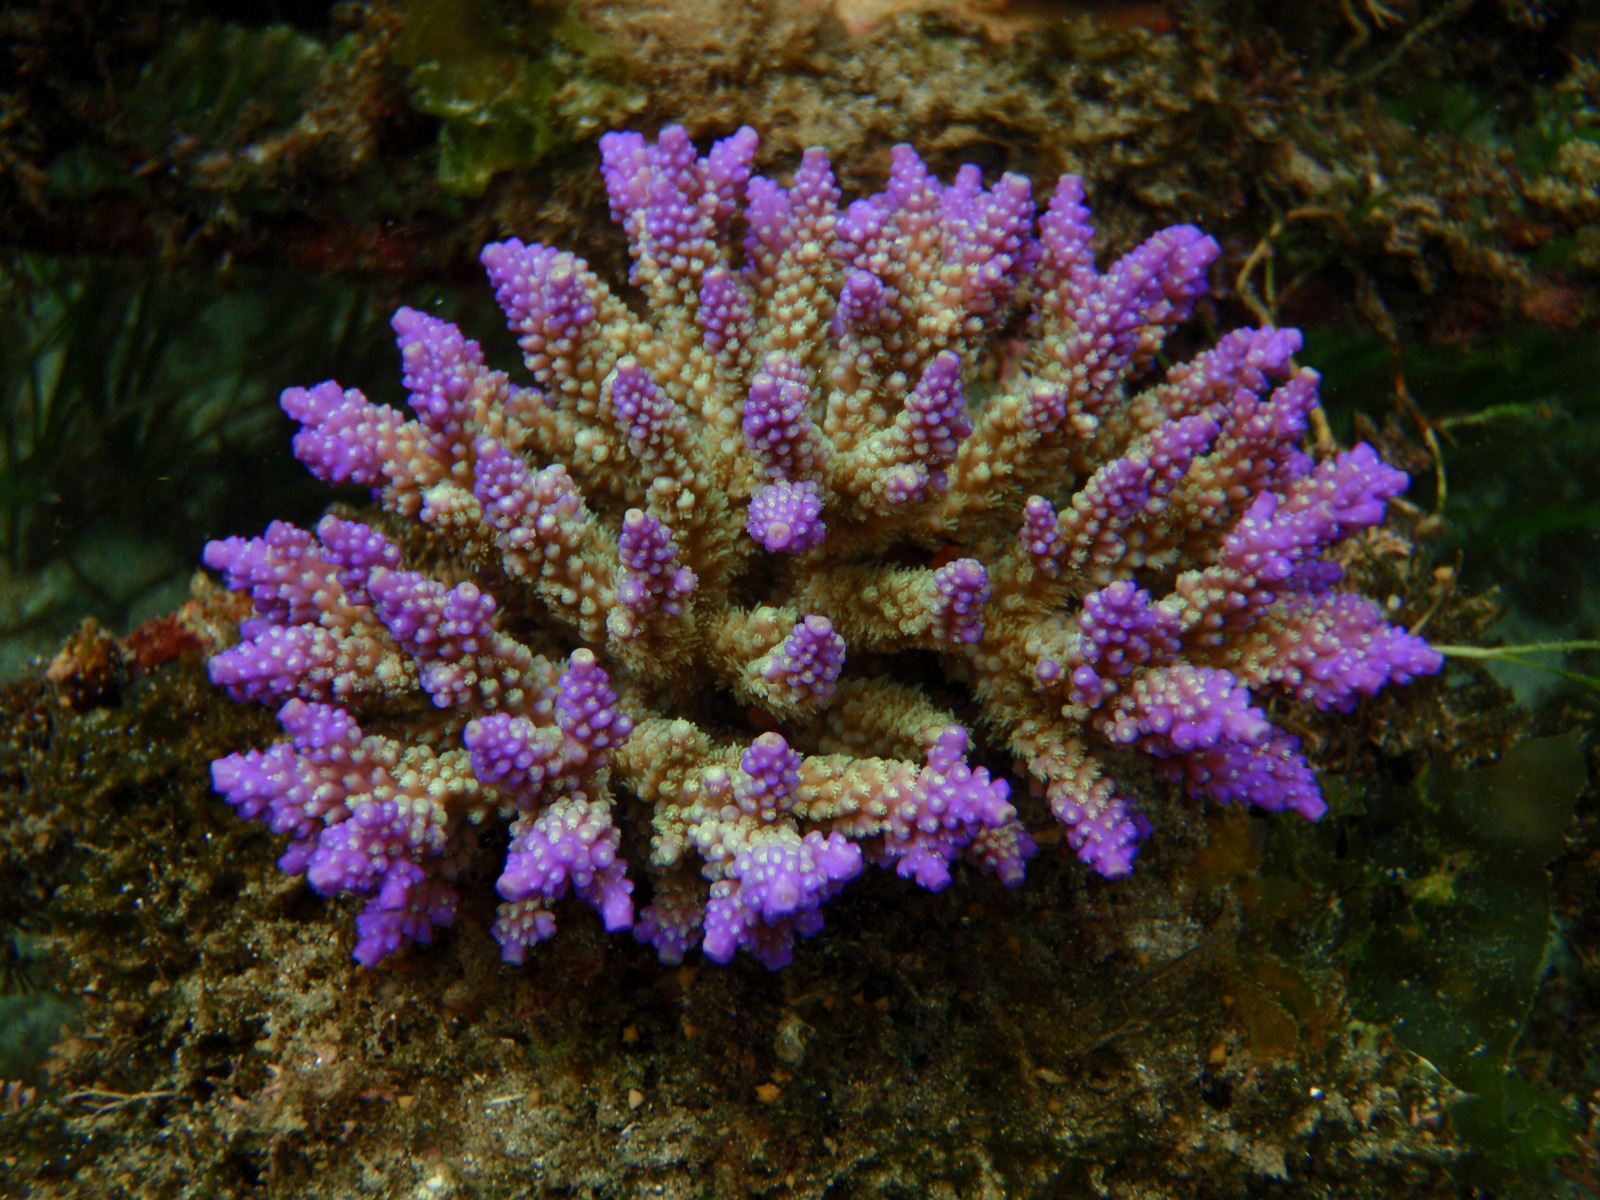 purple corals